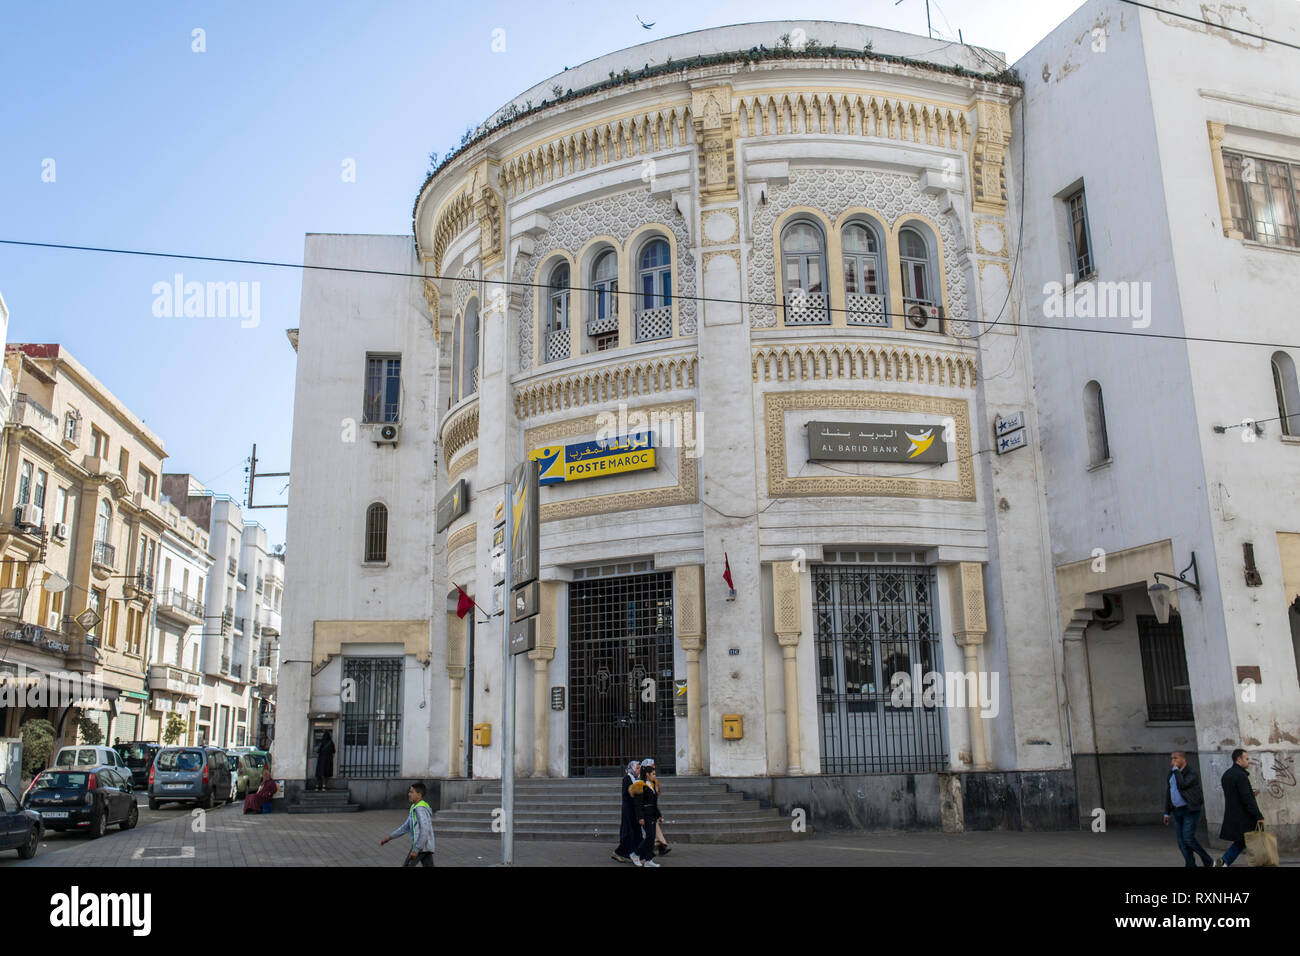 CASABLANCA, MOROCCO - MARCH 9, 2019: Moroccan Post building in Casablanca, Morocco. Stock Photo